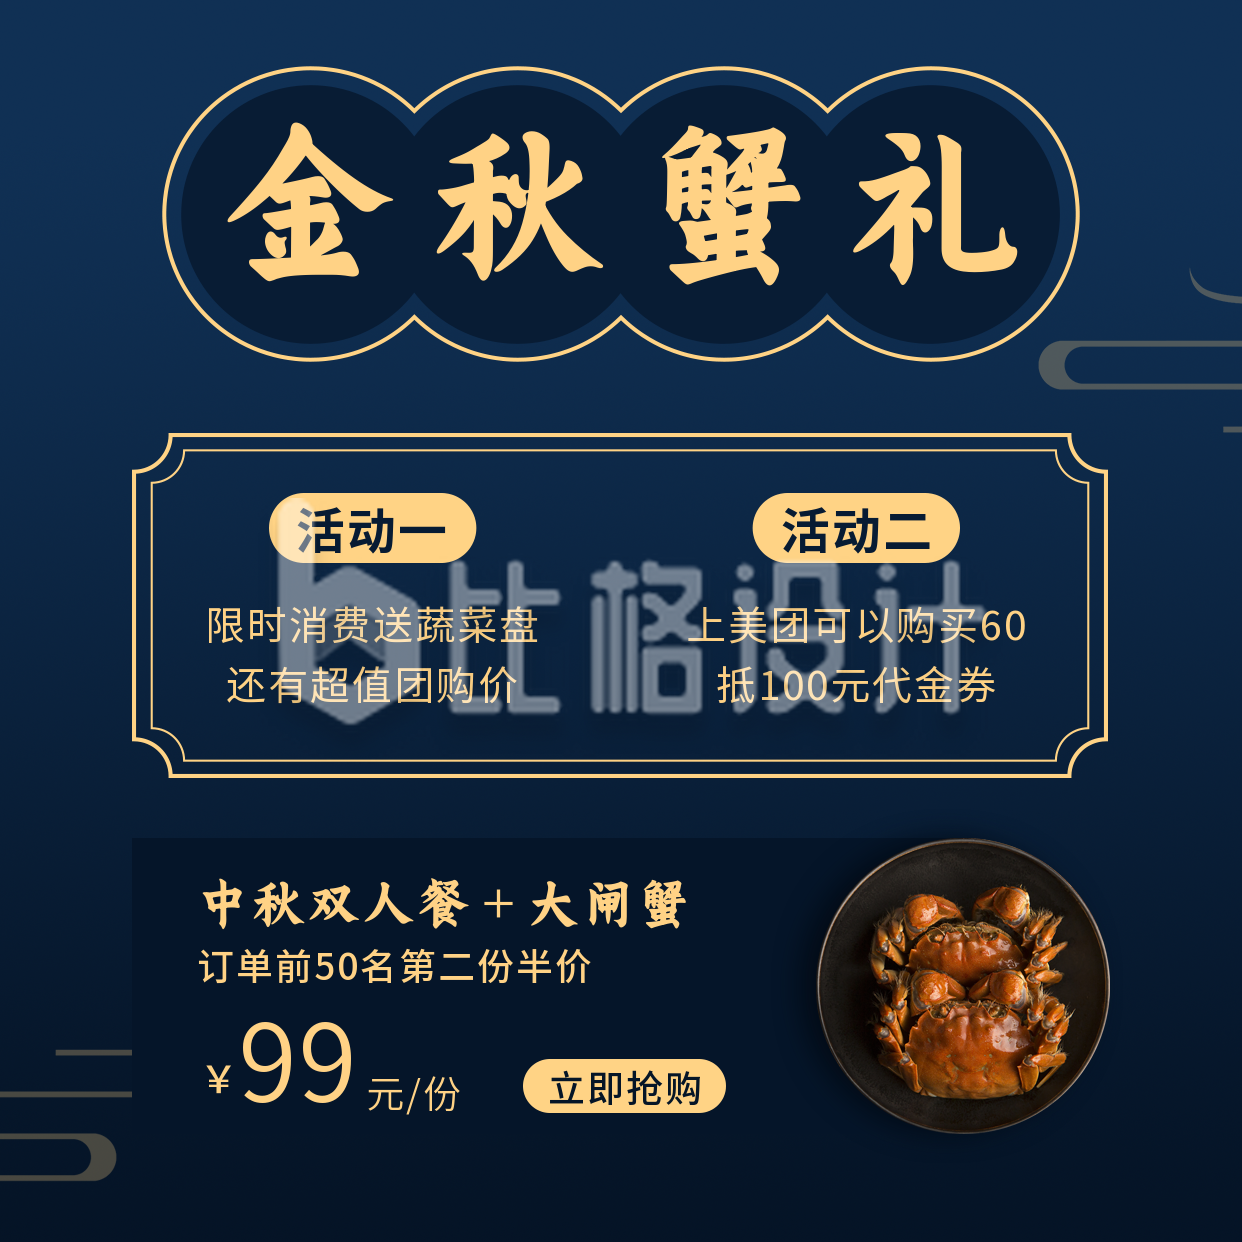 节日中秋美食餐饮活动宣传实景蓝色方形海报